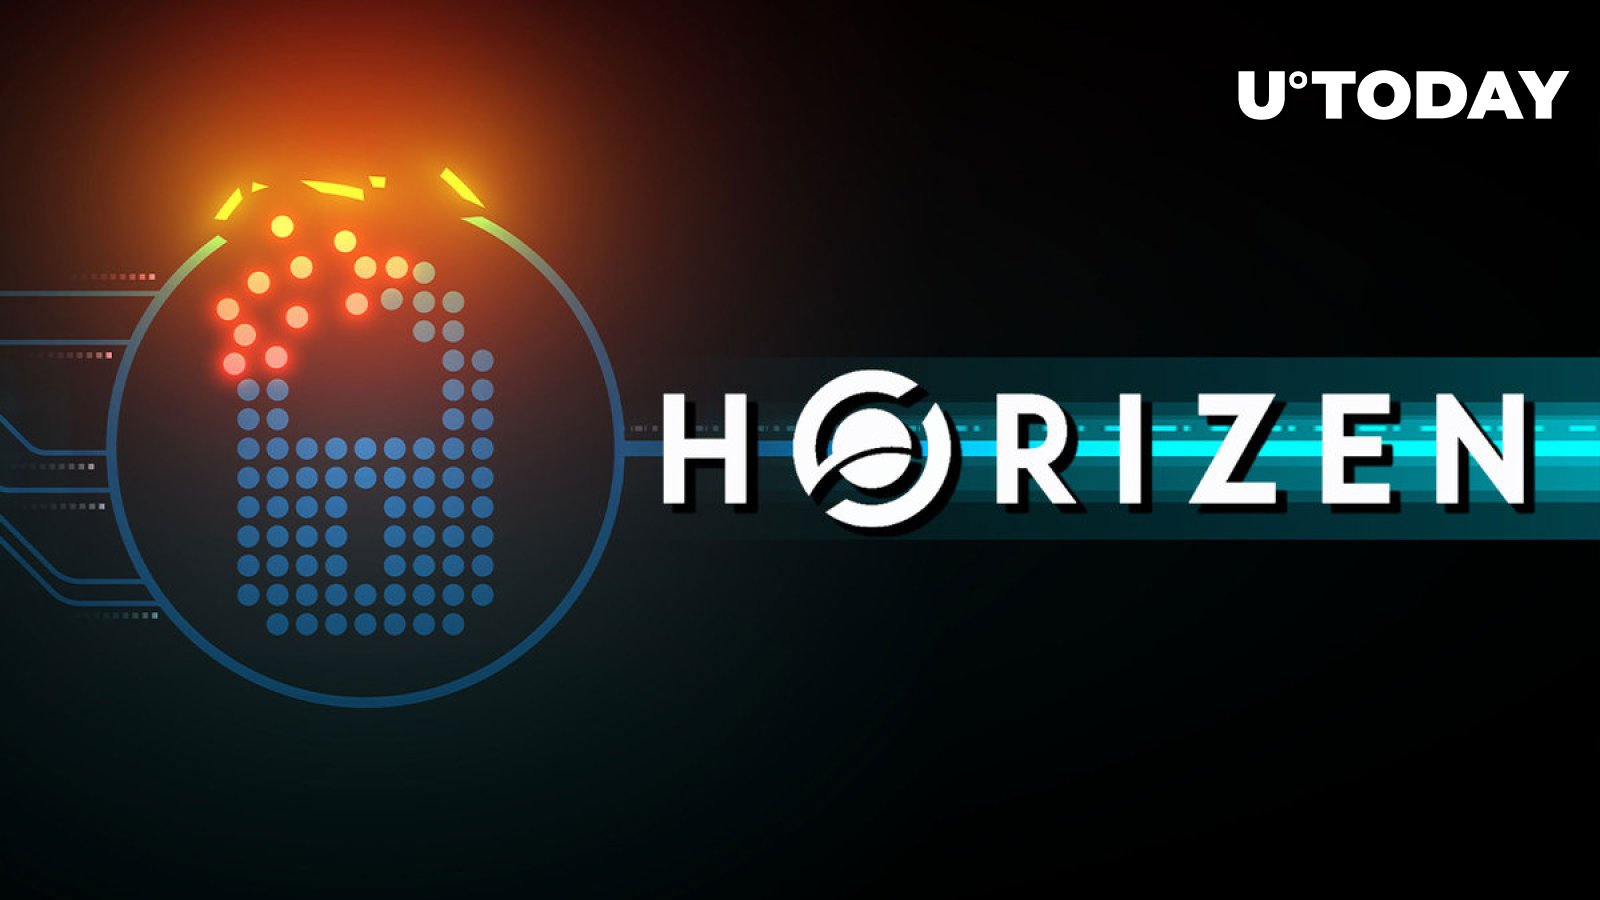 Horizen (ZEN) is no Longer a Privacy Coin